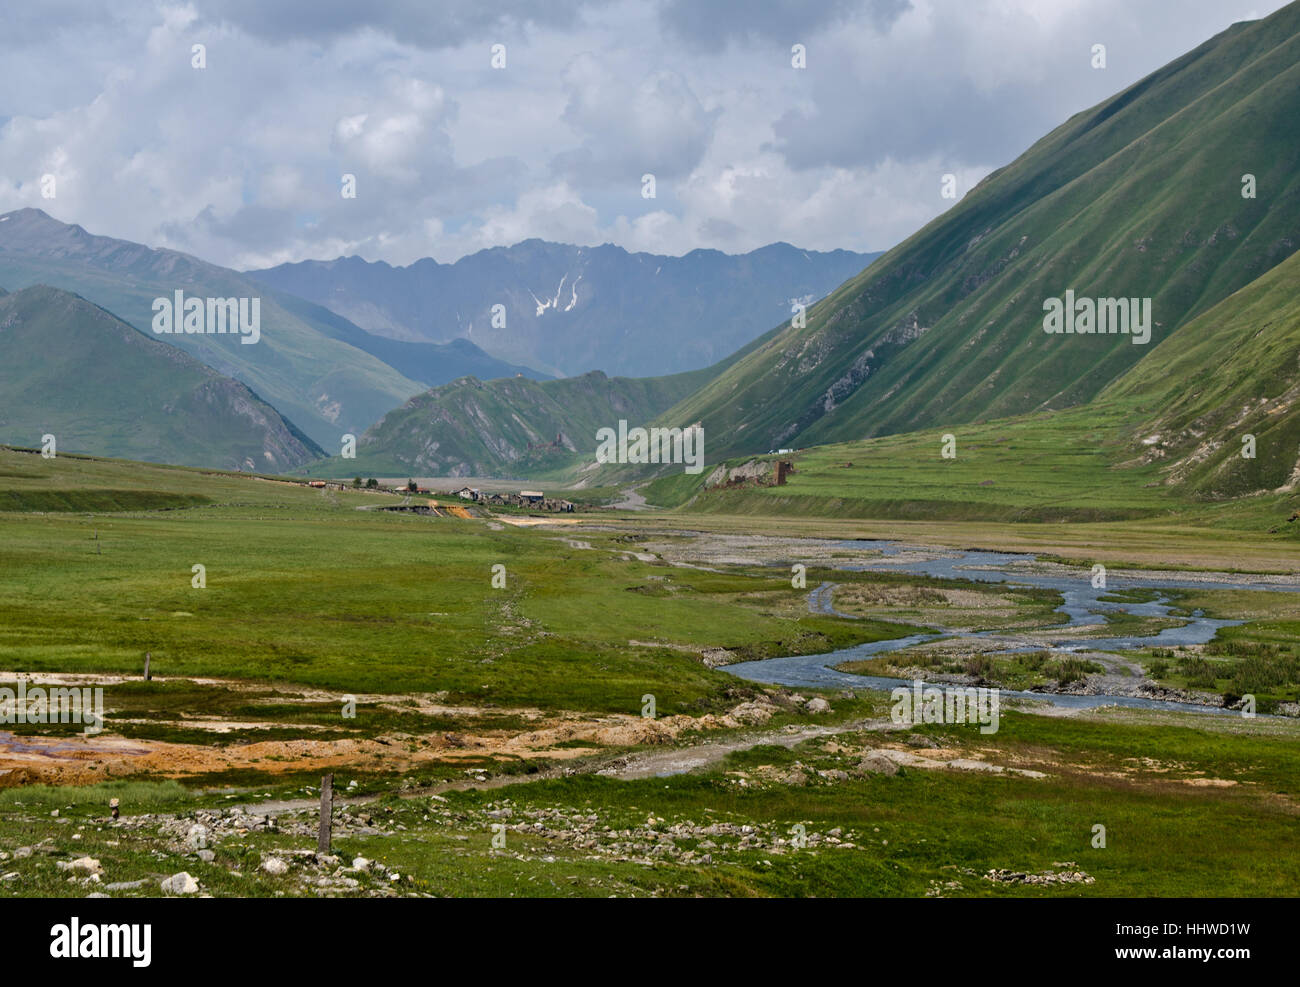 mountains, georgia, river, water, blue, mountains, green, asia, distance, Stock Photo